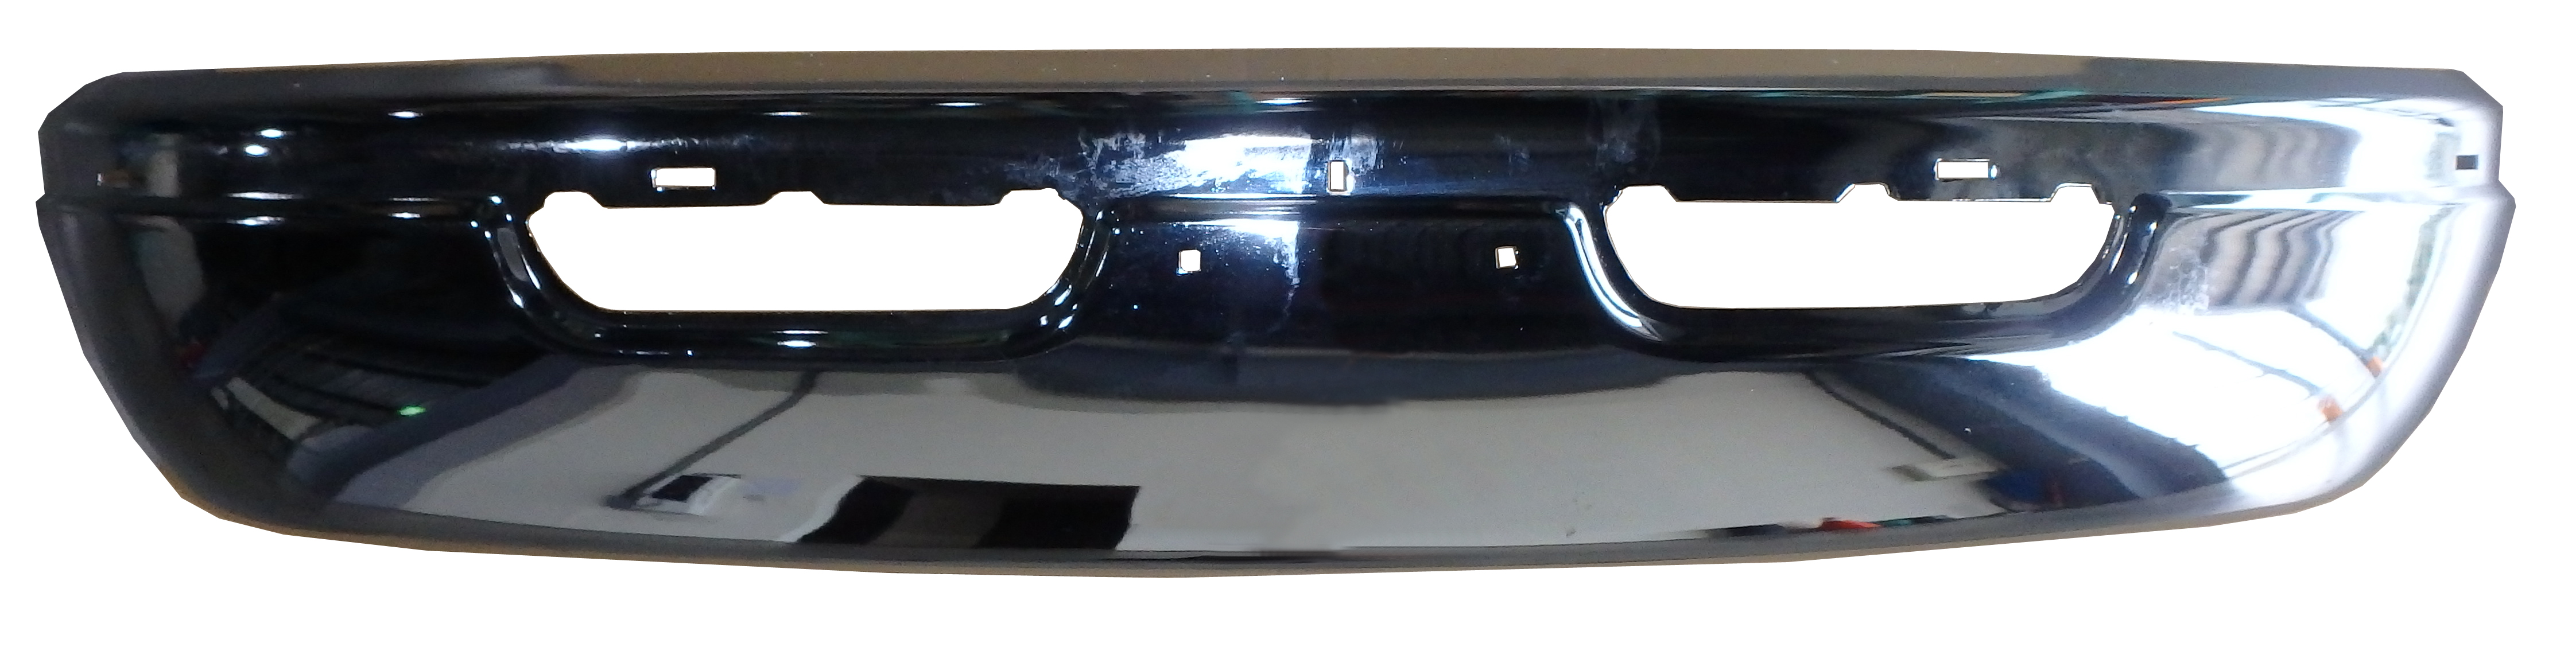 Aftermarket METAL FRONT BUMPERS for DODGE - RAM 1500 VAN, RAM 1500 VAN,99-99,Front bumper face bar